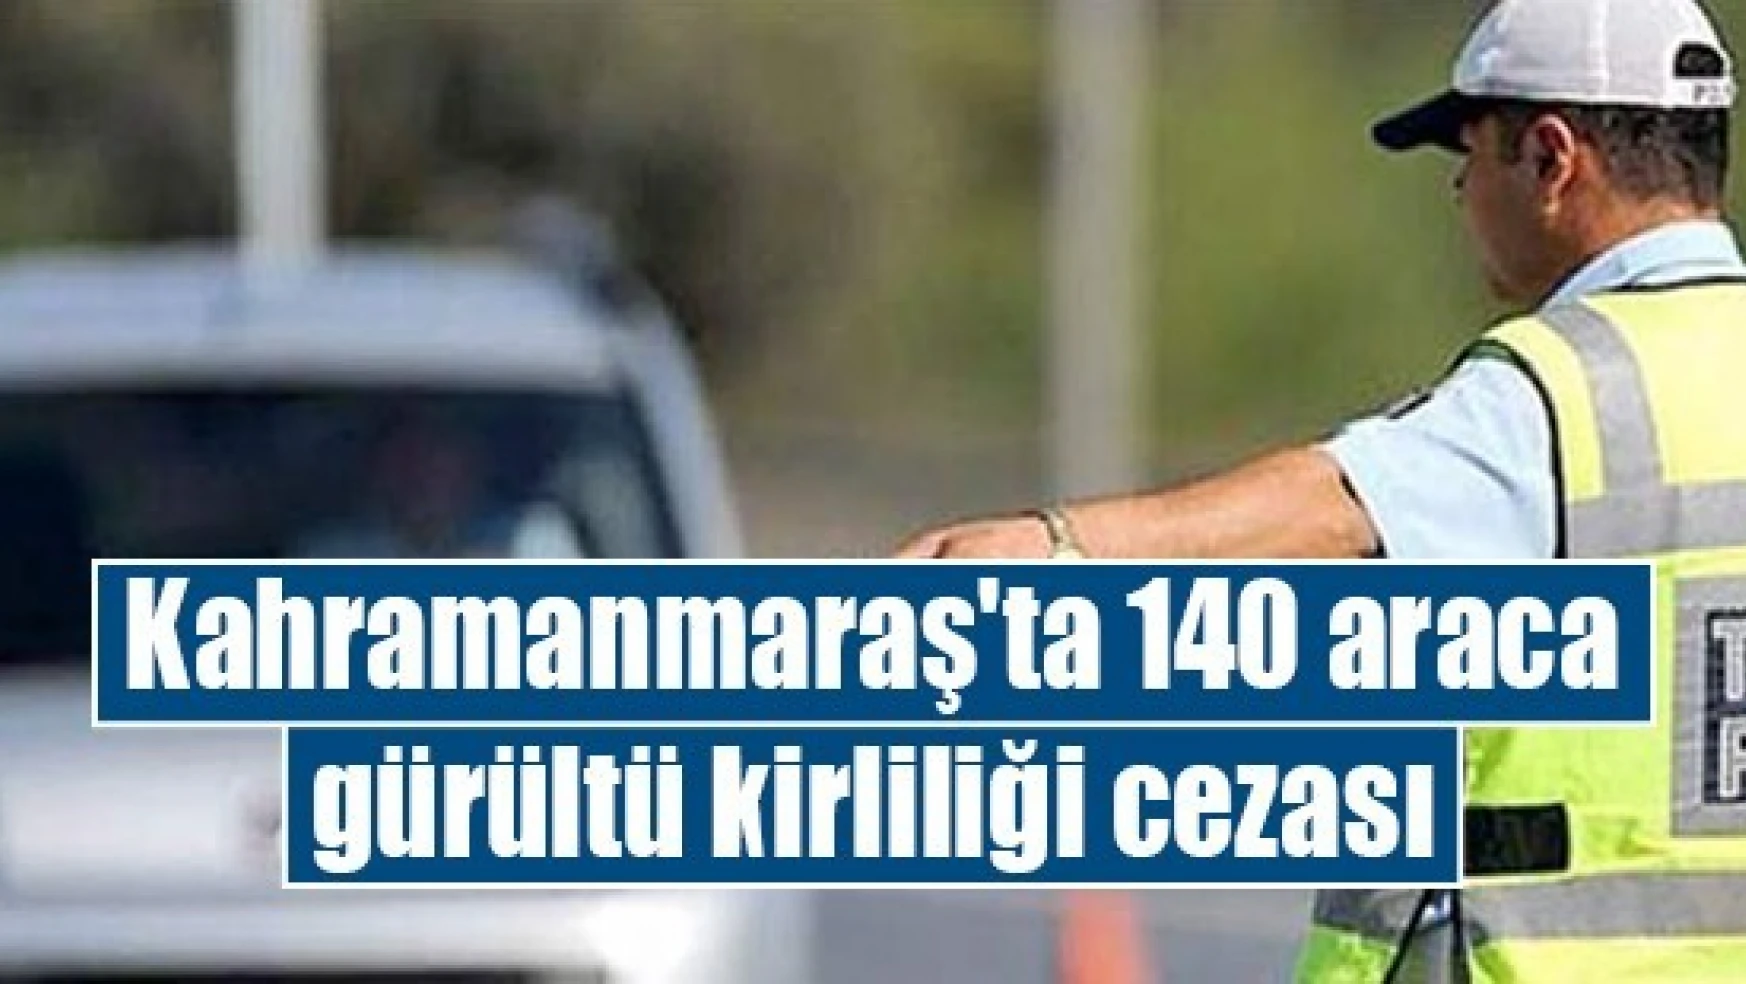 Kahramanmaraş'ta 140 araca gürültü kirliliği cezası